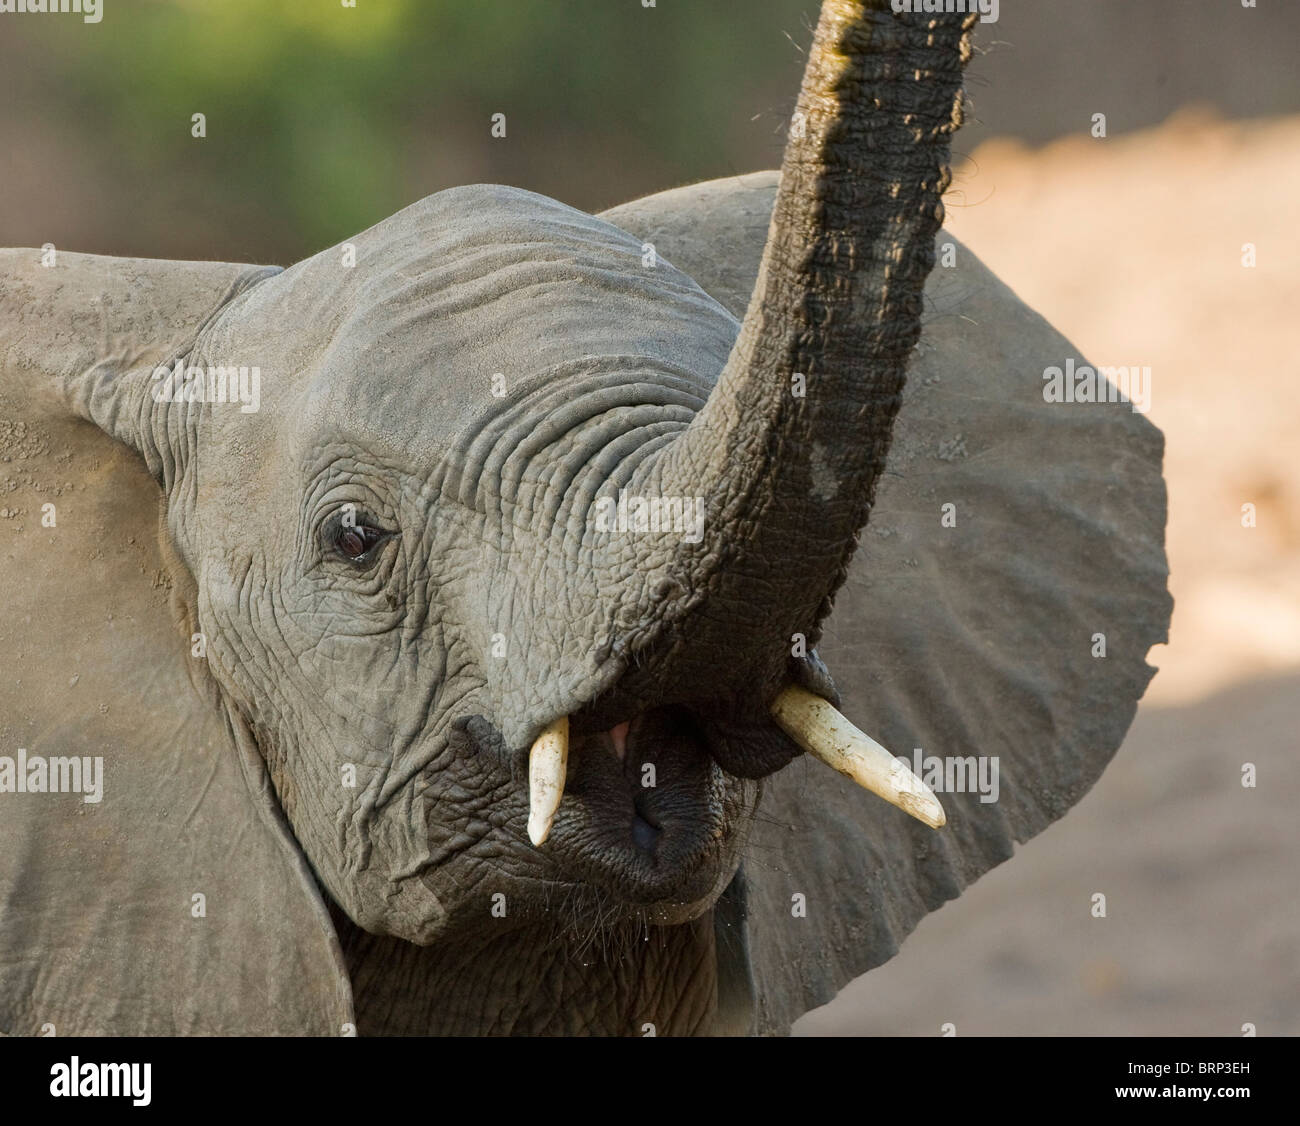 Ritratto di un elefante africano con il suo tronco sollevato Foto Stock